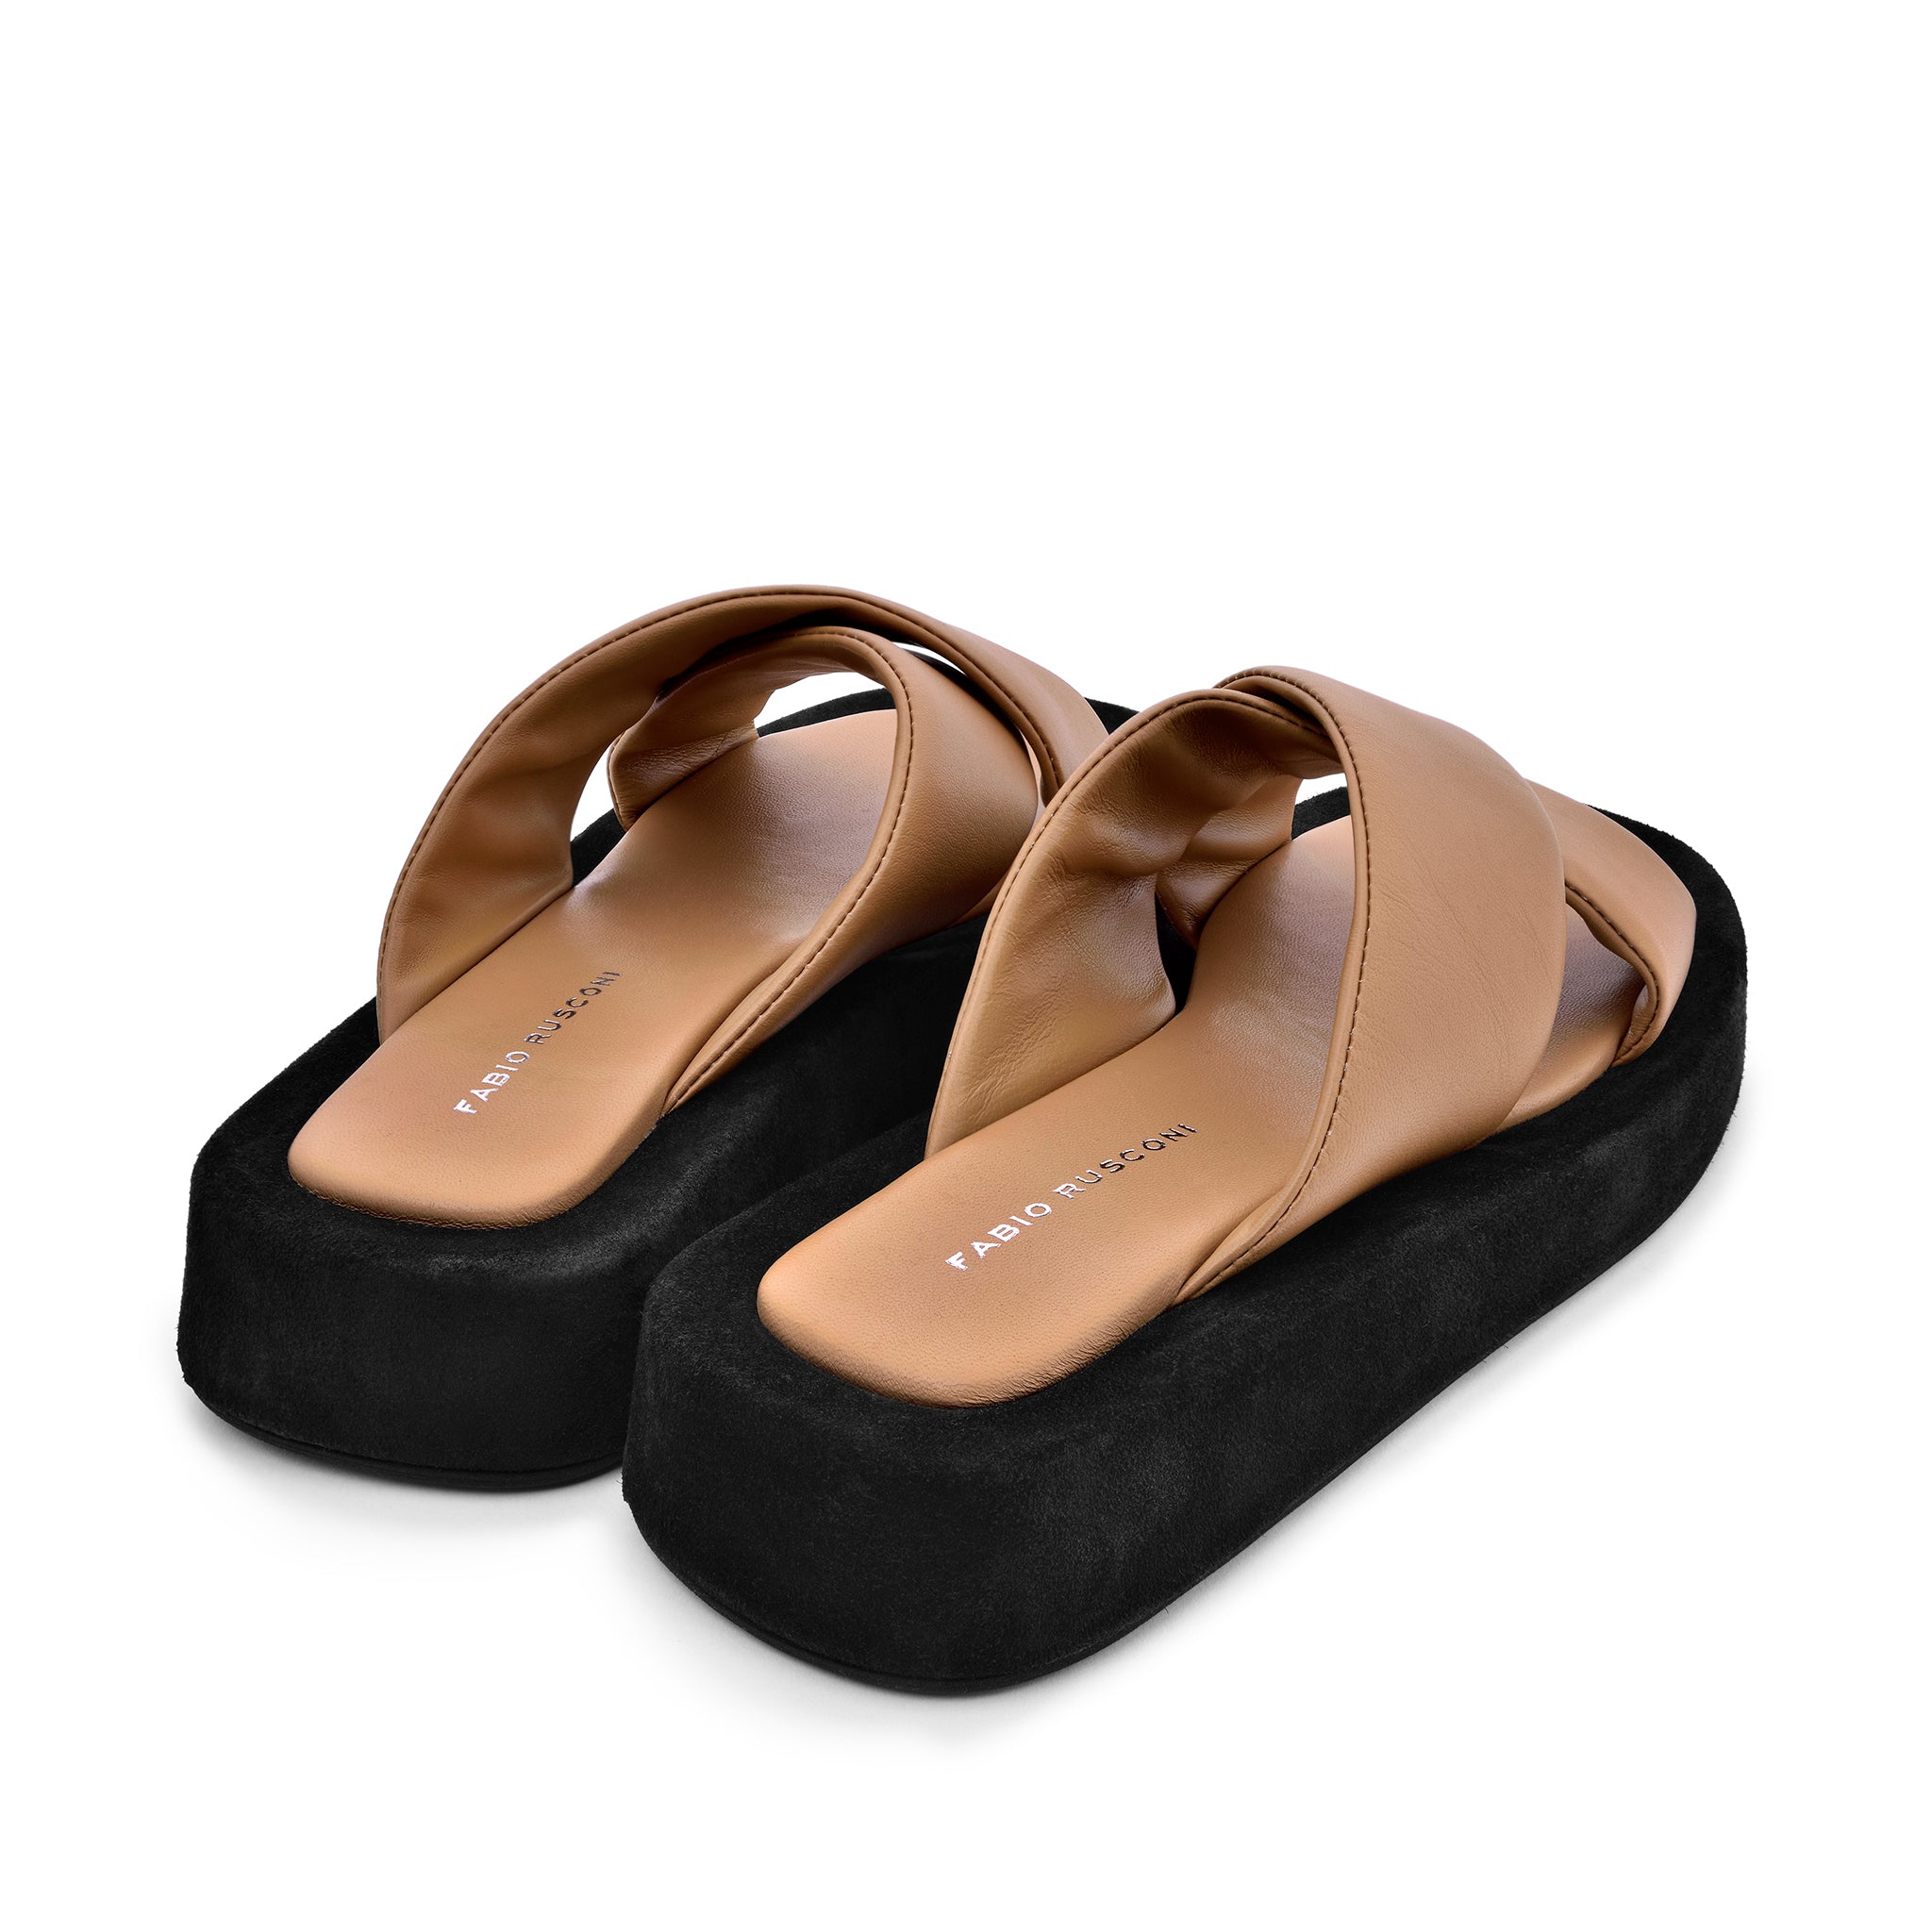 Luna Beige Leather Flat Sandals LUNA5004 - 4